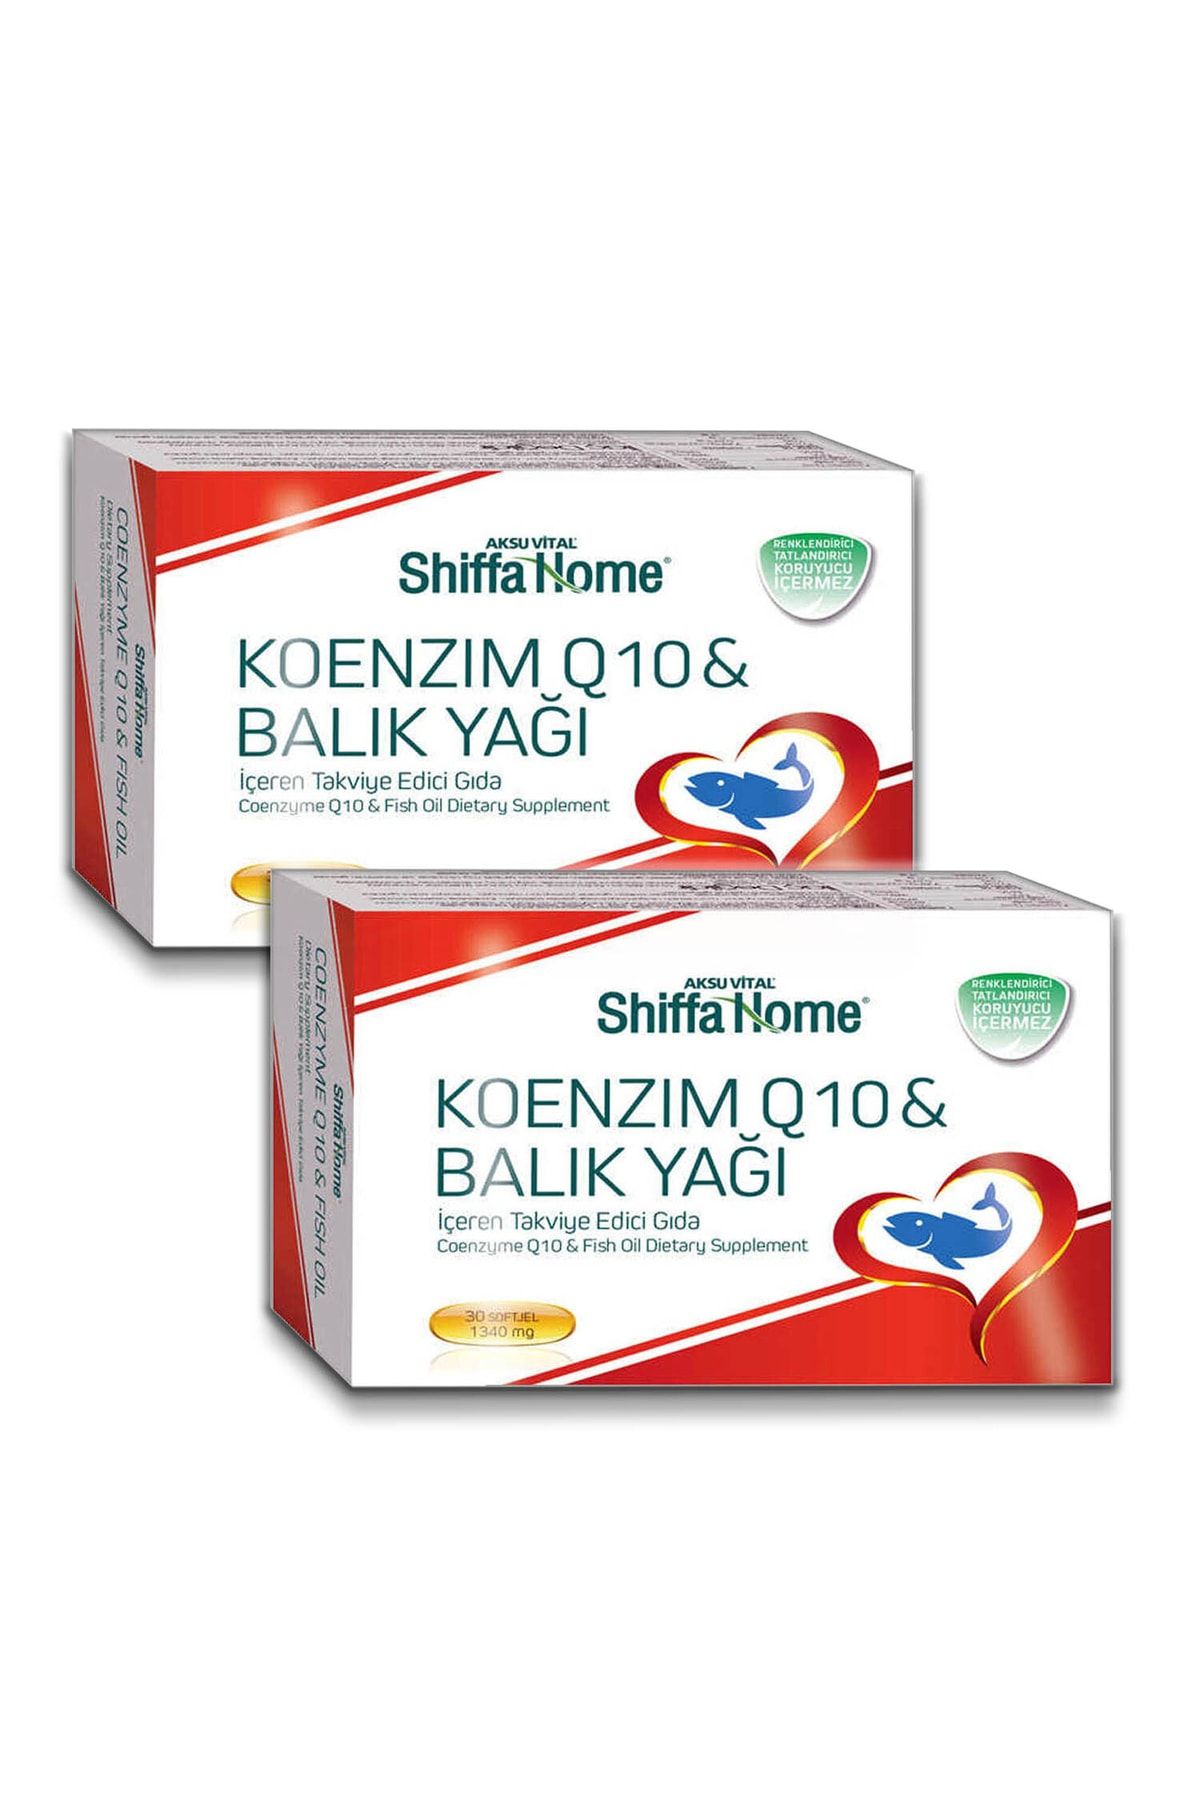 Shiffa Home 2 Adt Aksuvital Koenzim Q10-omega 3 1340mg 30 Softjel